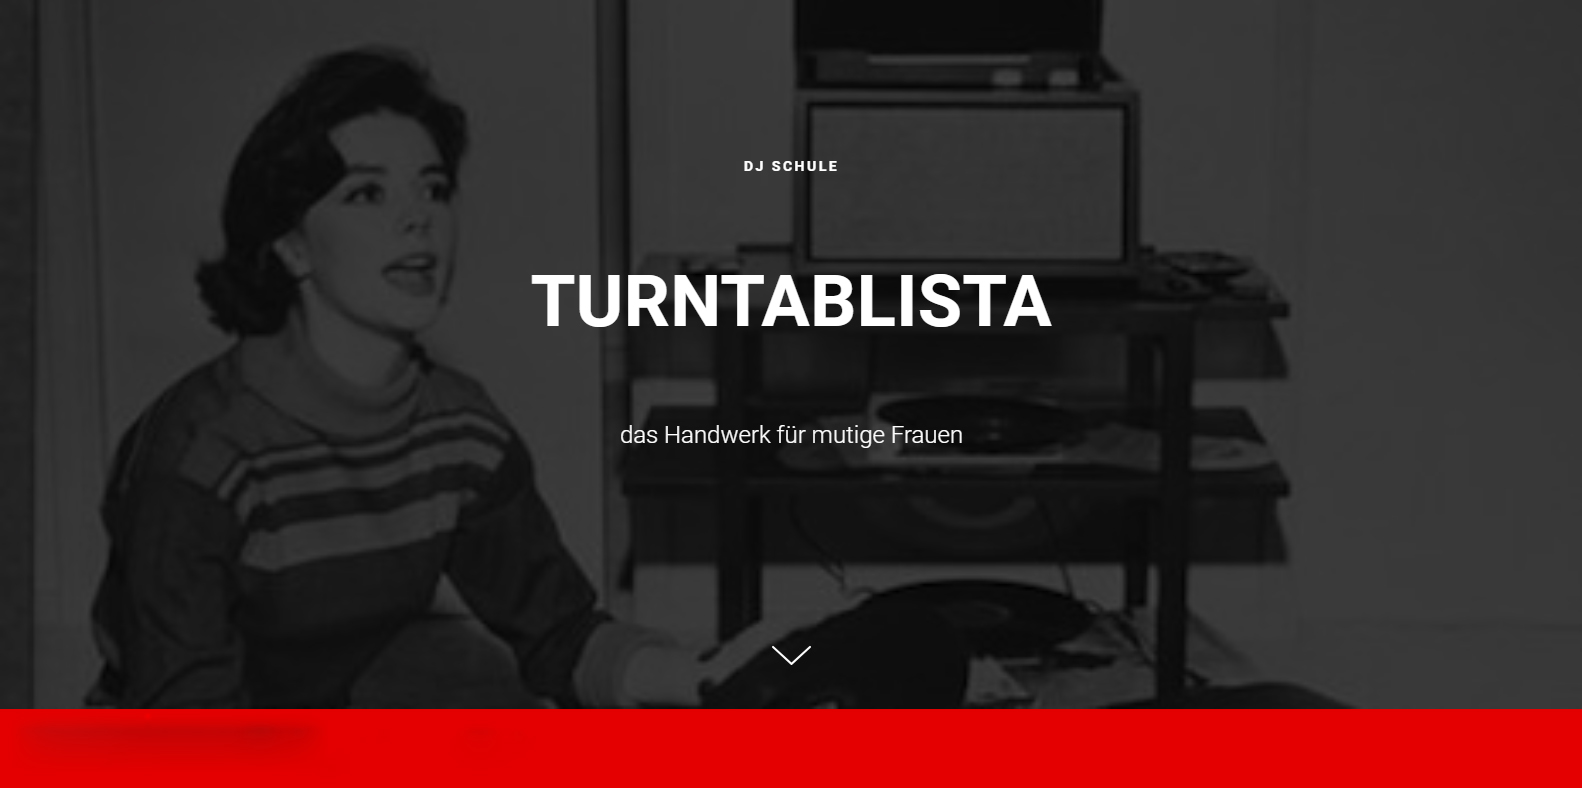 (c) Turntablista.com